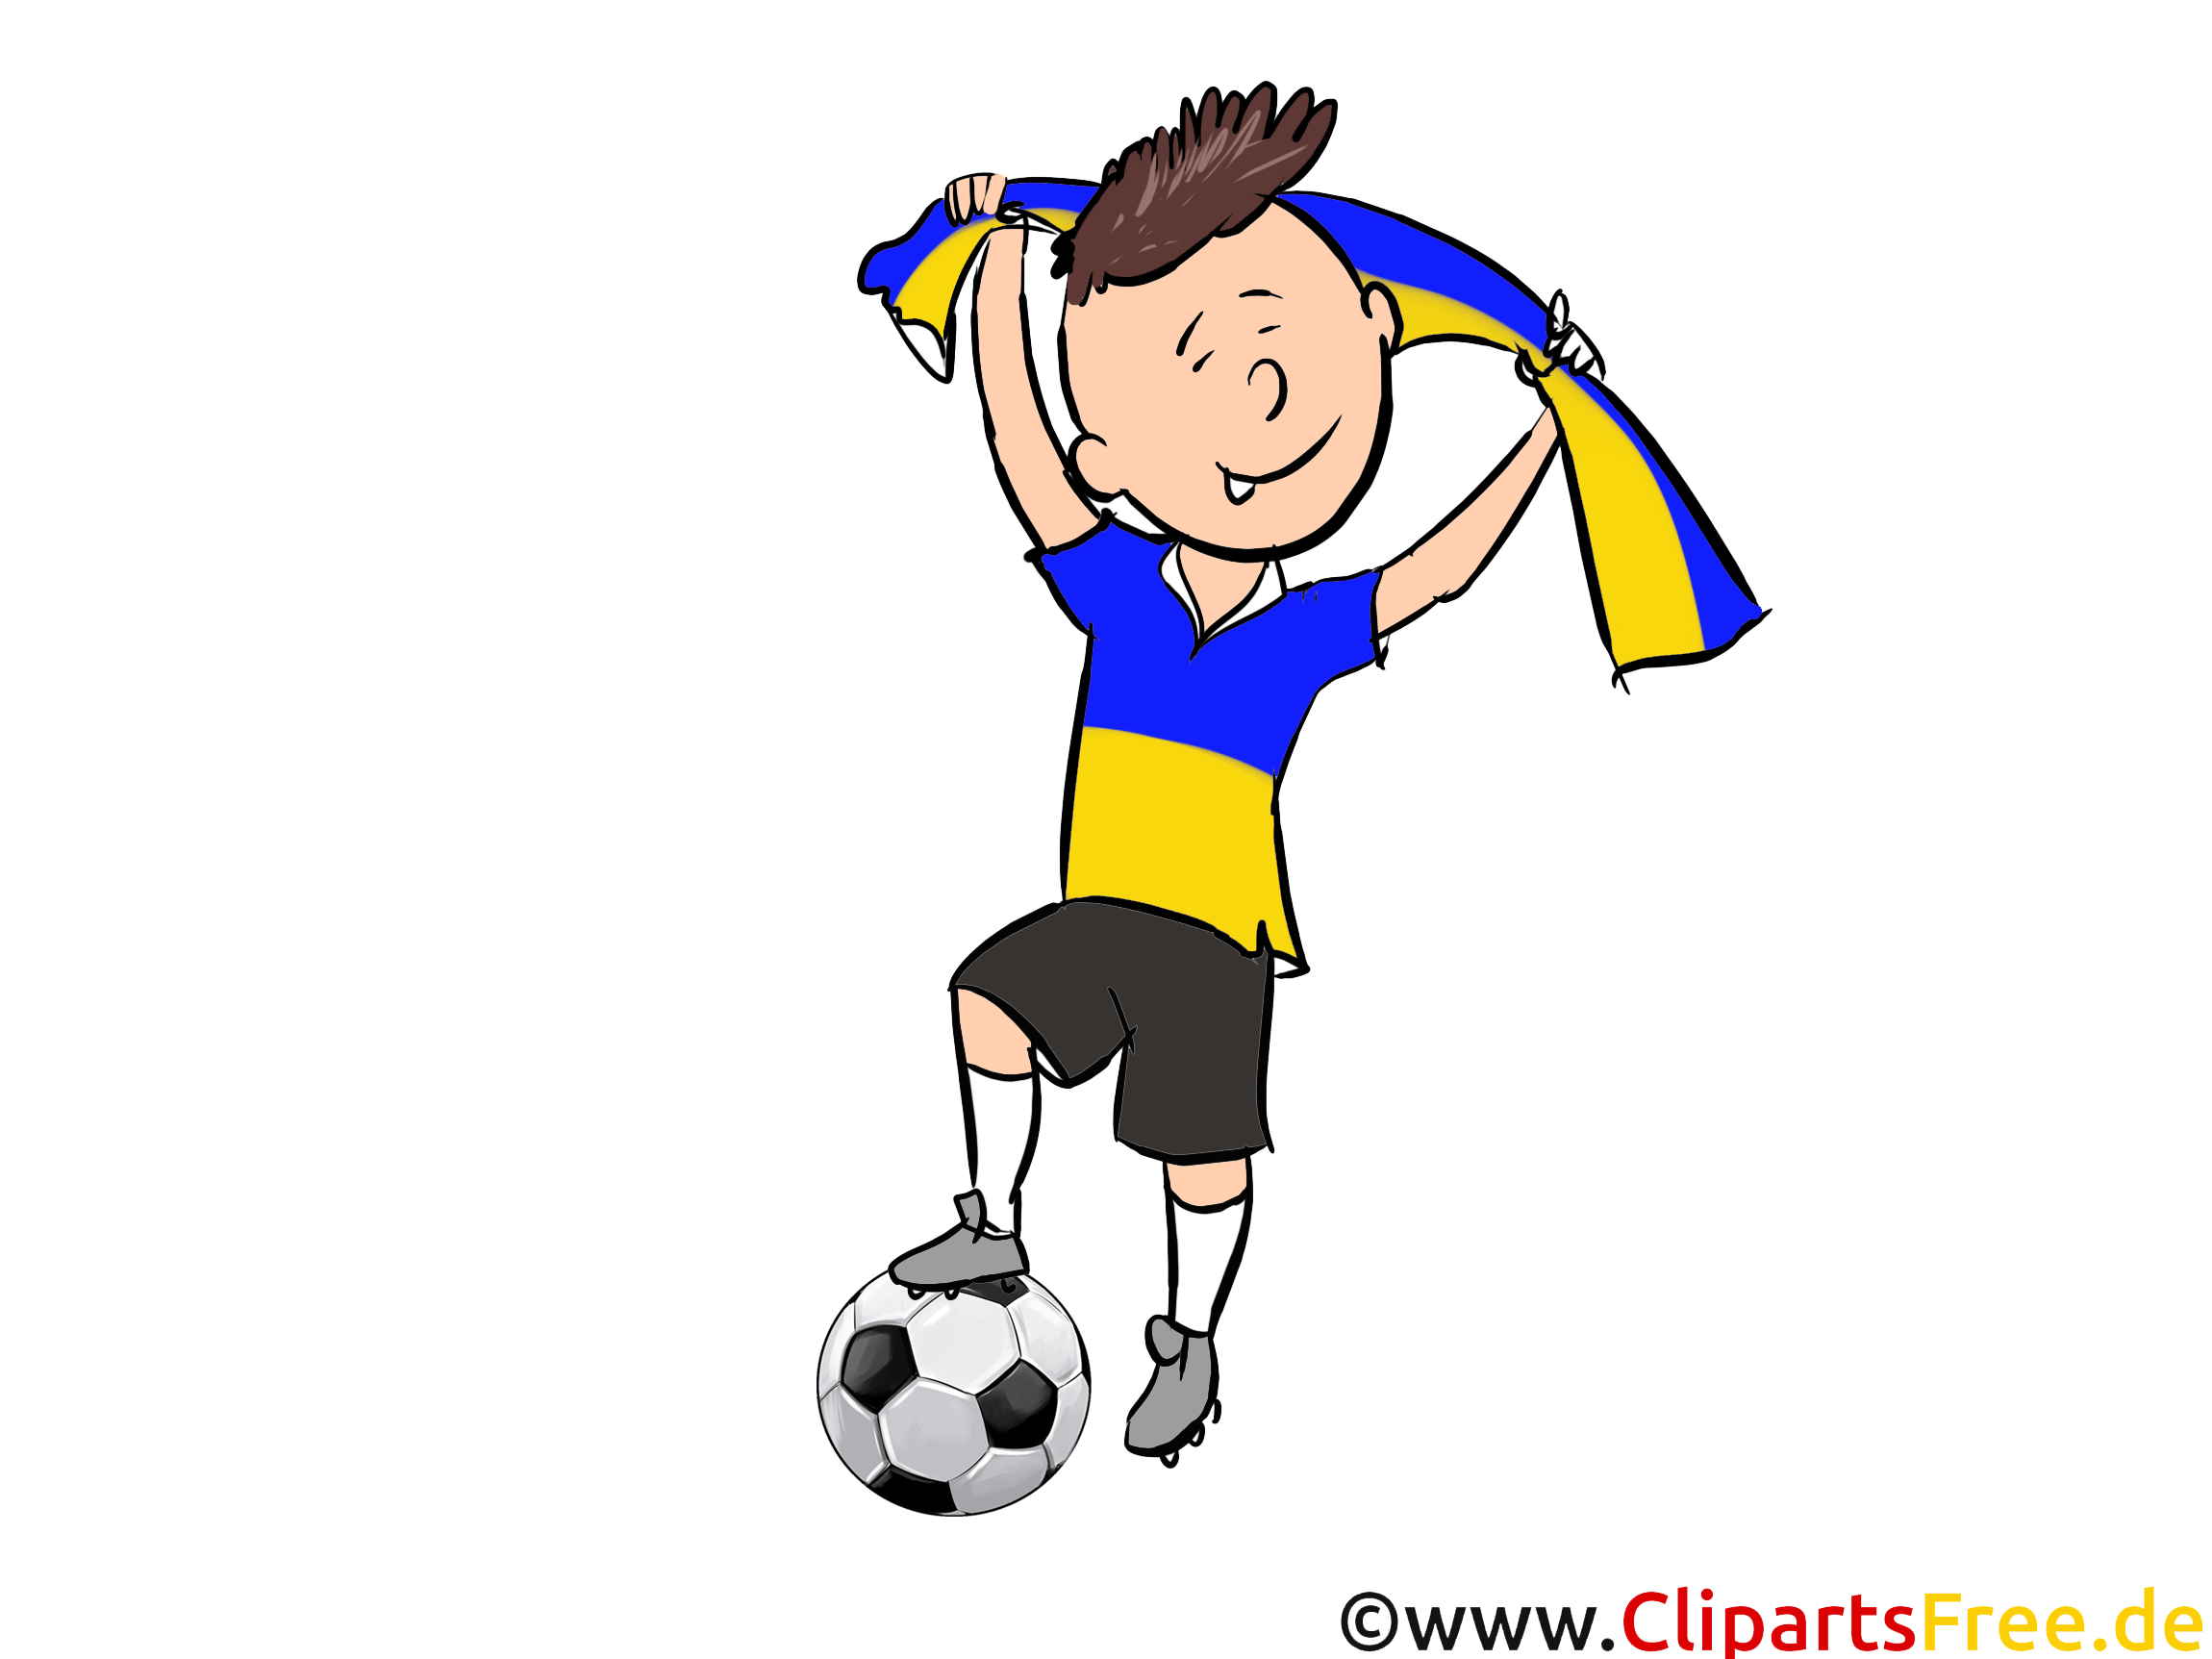 Télécharger Ukraine Soccer Images gratuitement